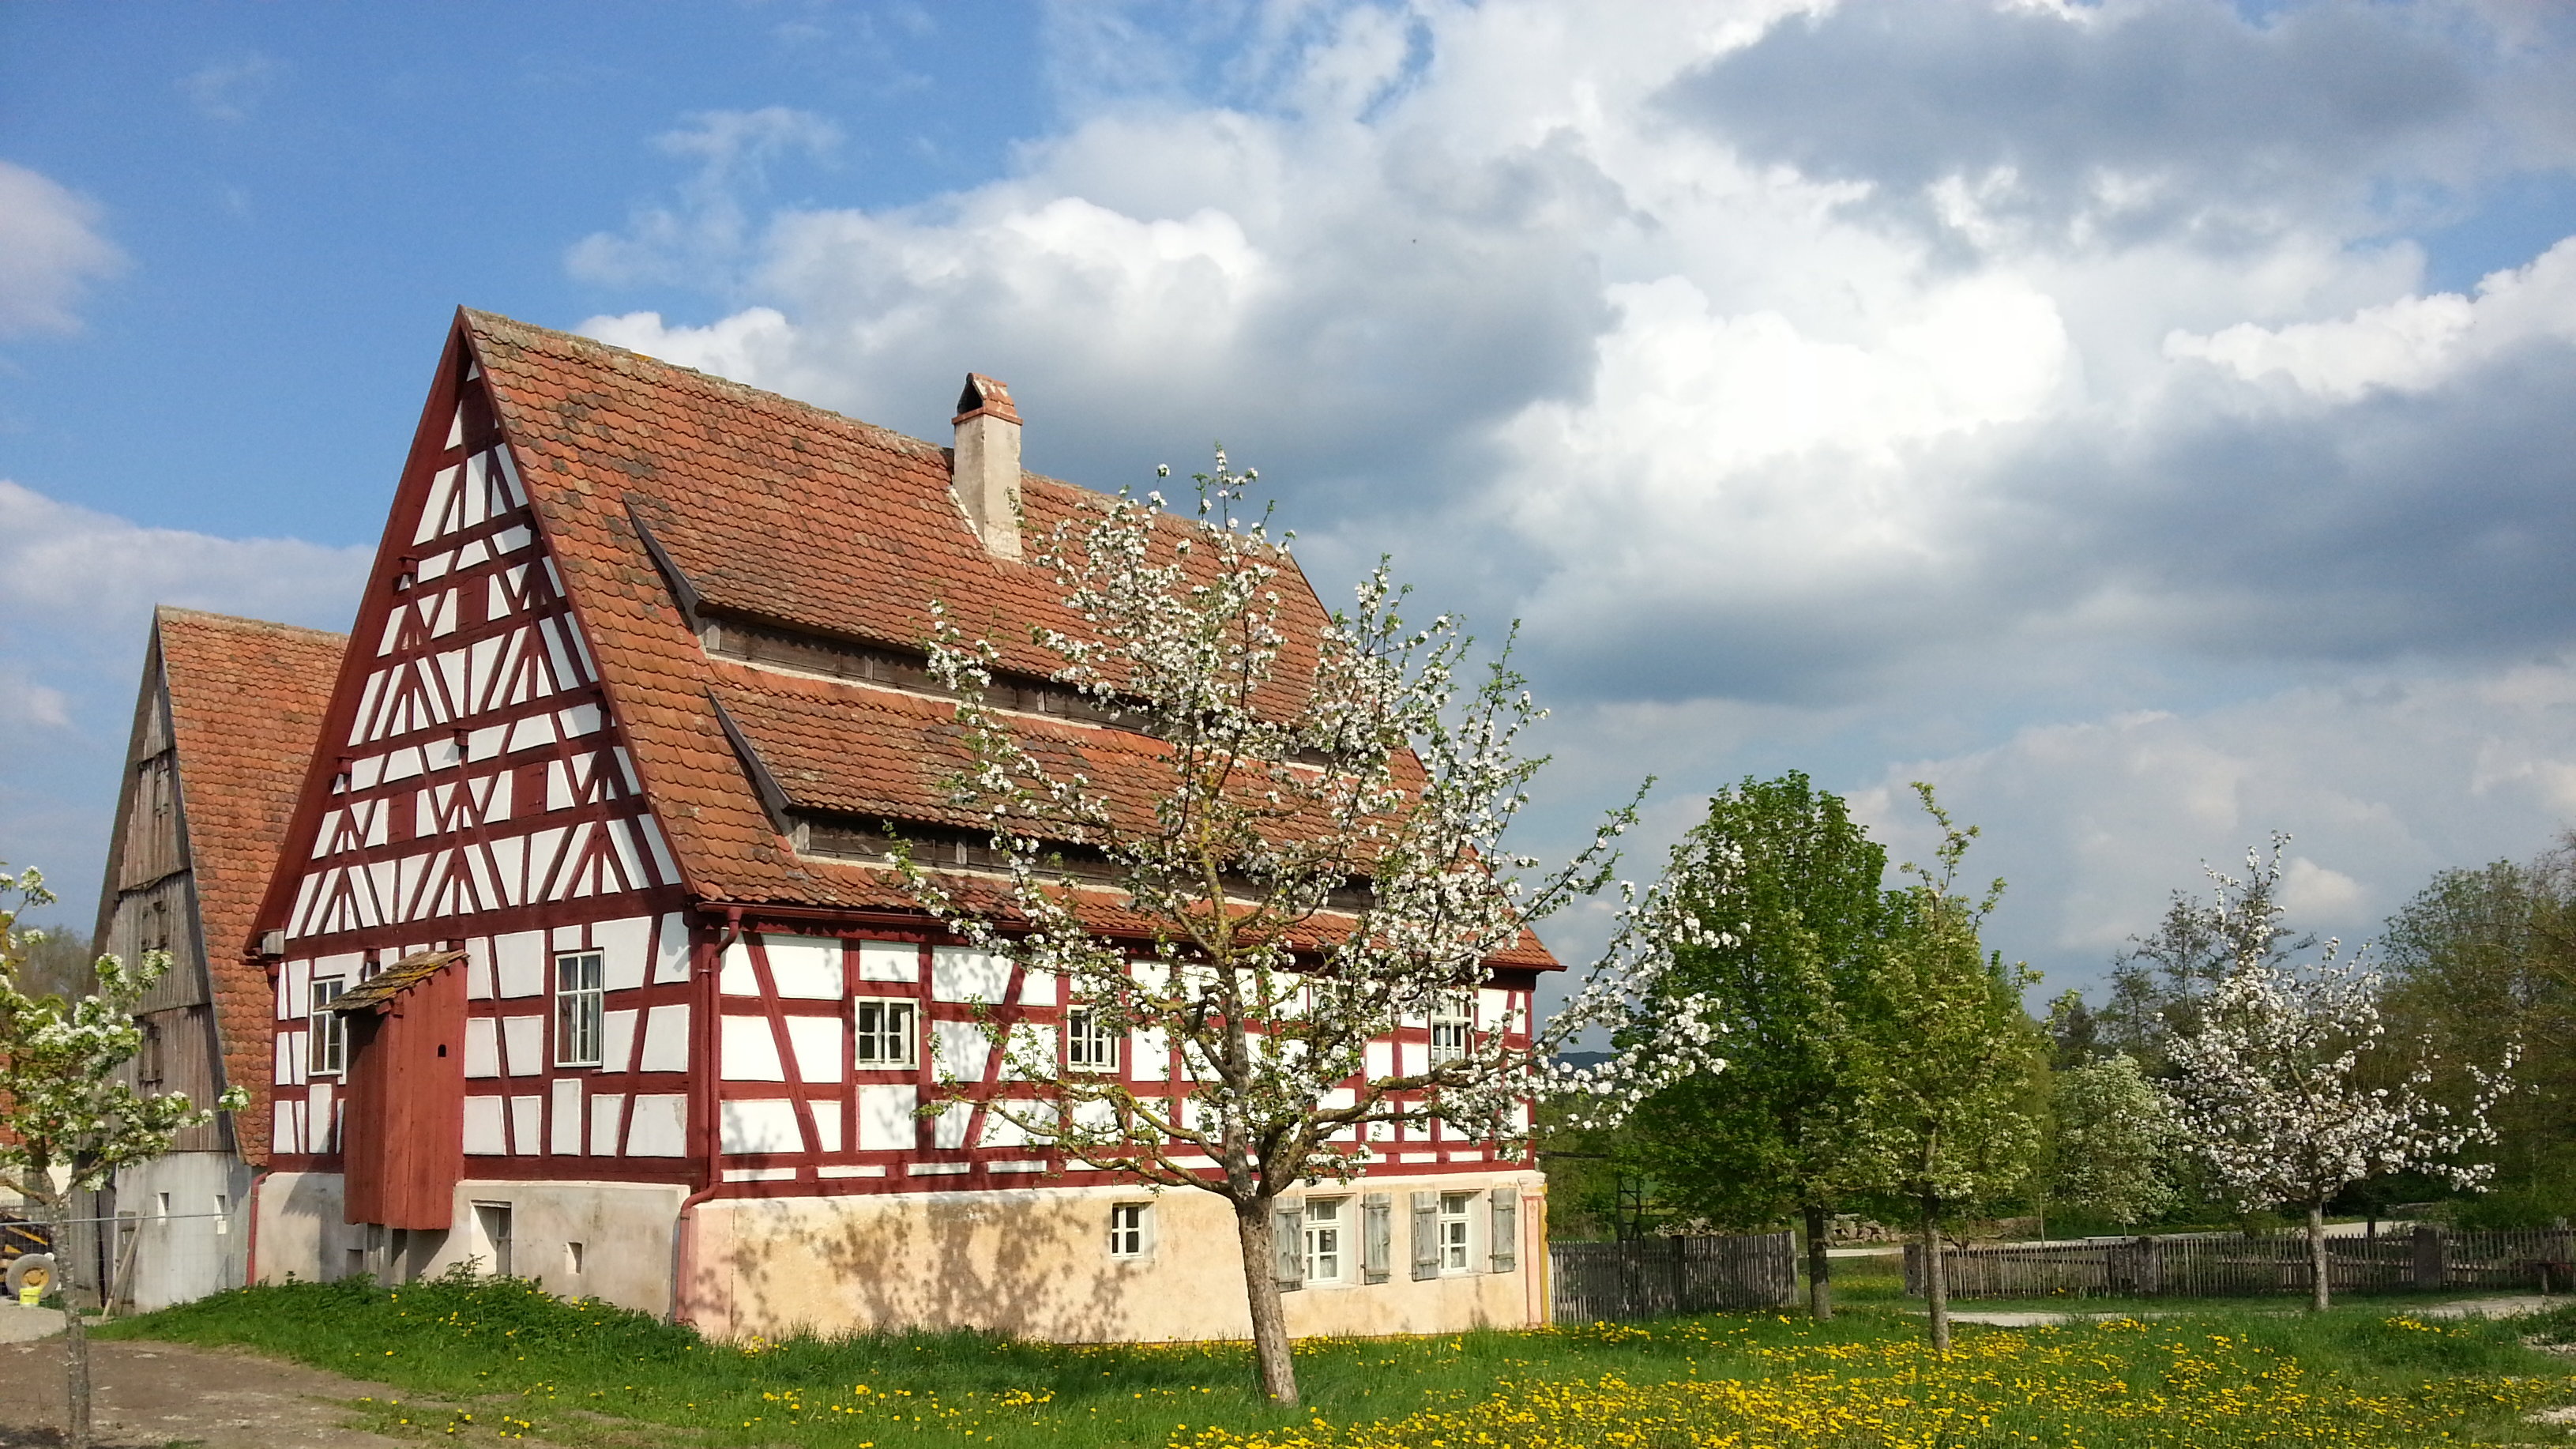 Fotoaufnahme des Hopfenbauernhauses aus Eschenbach am aktuellen Standort. Vor dem Haus befindet sich eine Wiese mit blühenden Löwenzahn und blühenden Bäumen. Hinter dem Fachwerk steht der Hopfenstadel aus Thalheim. Der Himmel ist bewölkt. 